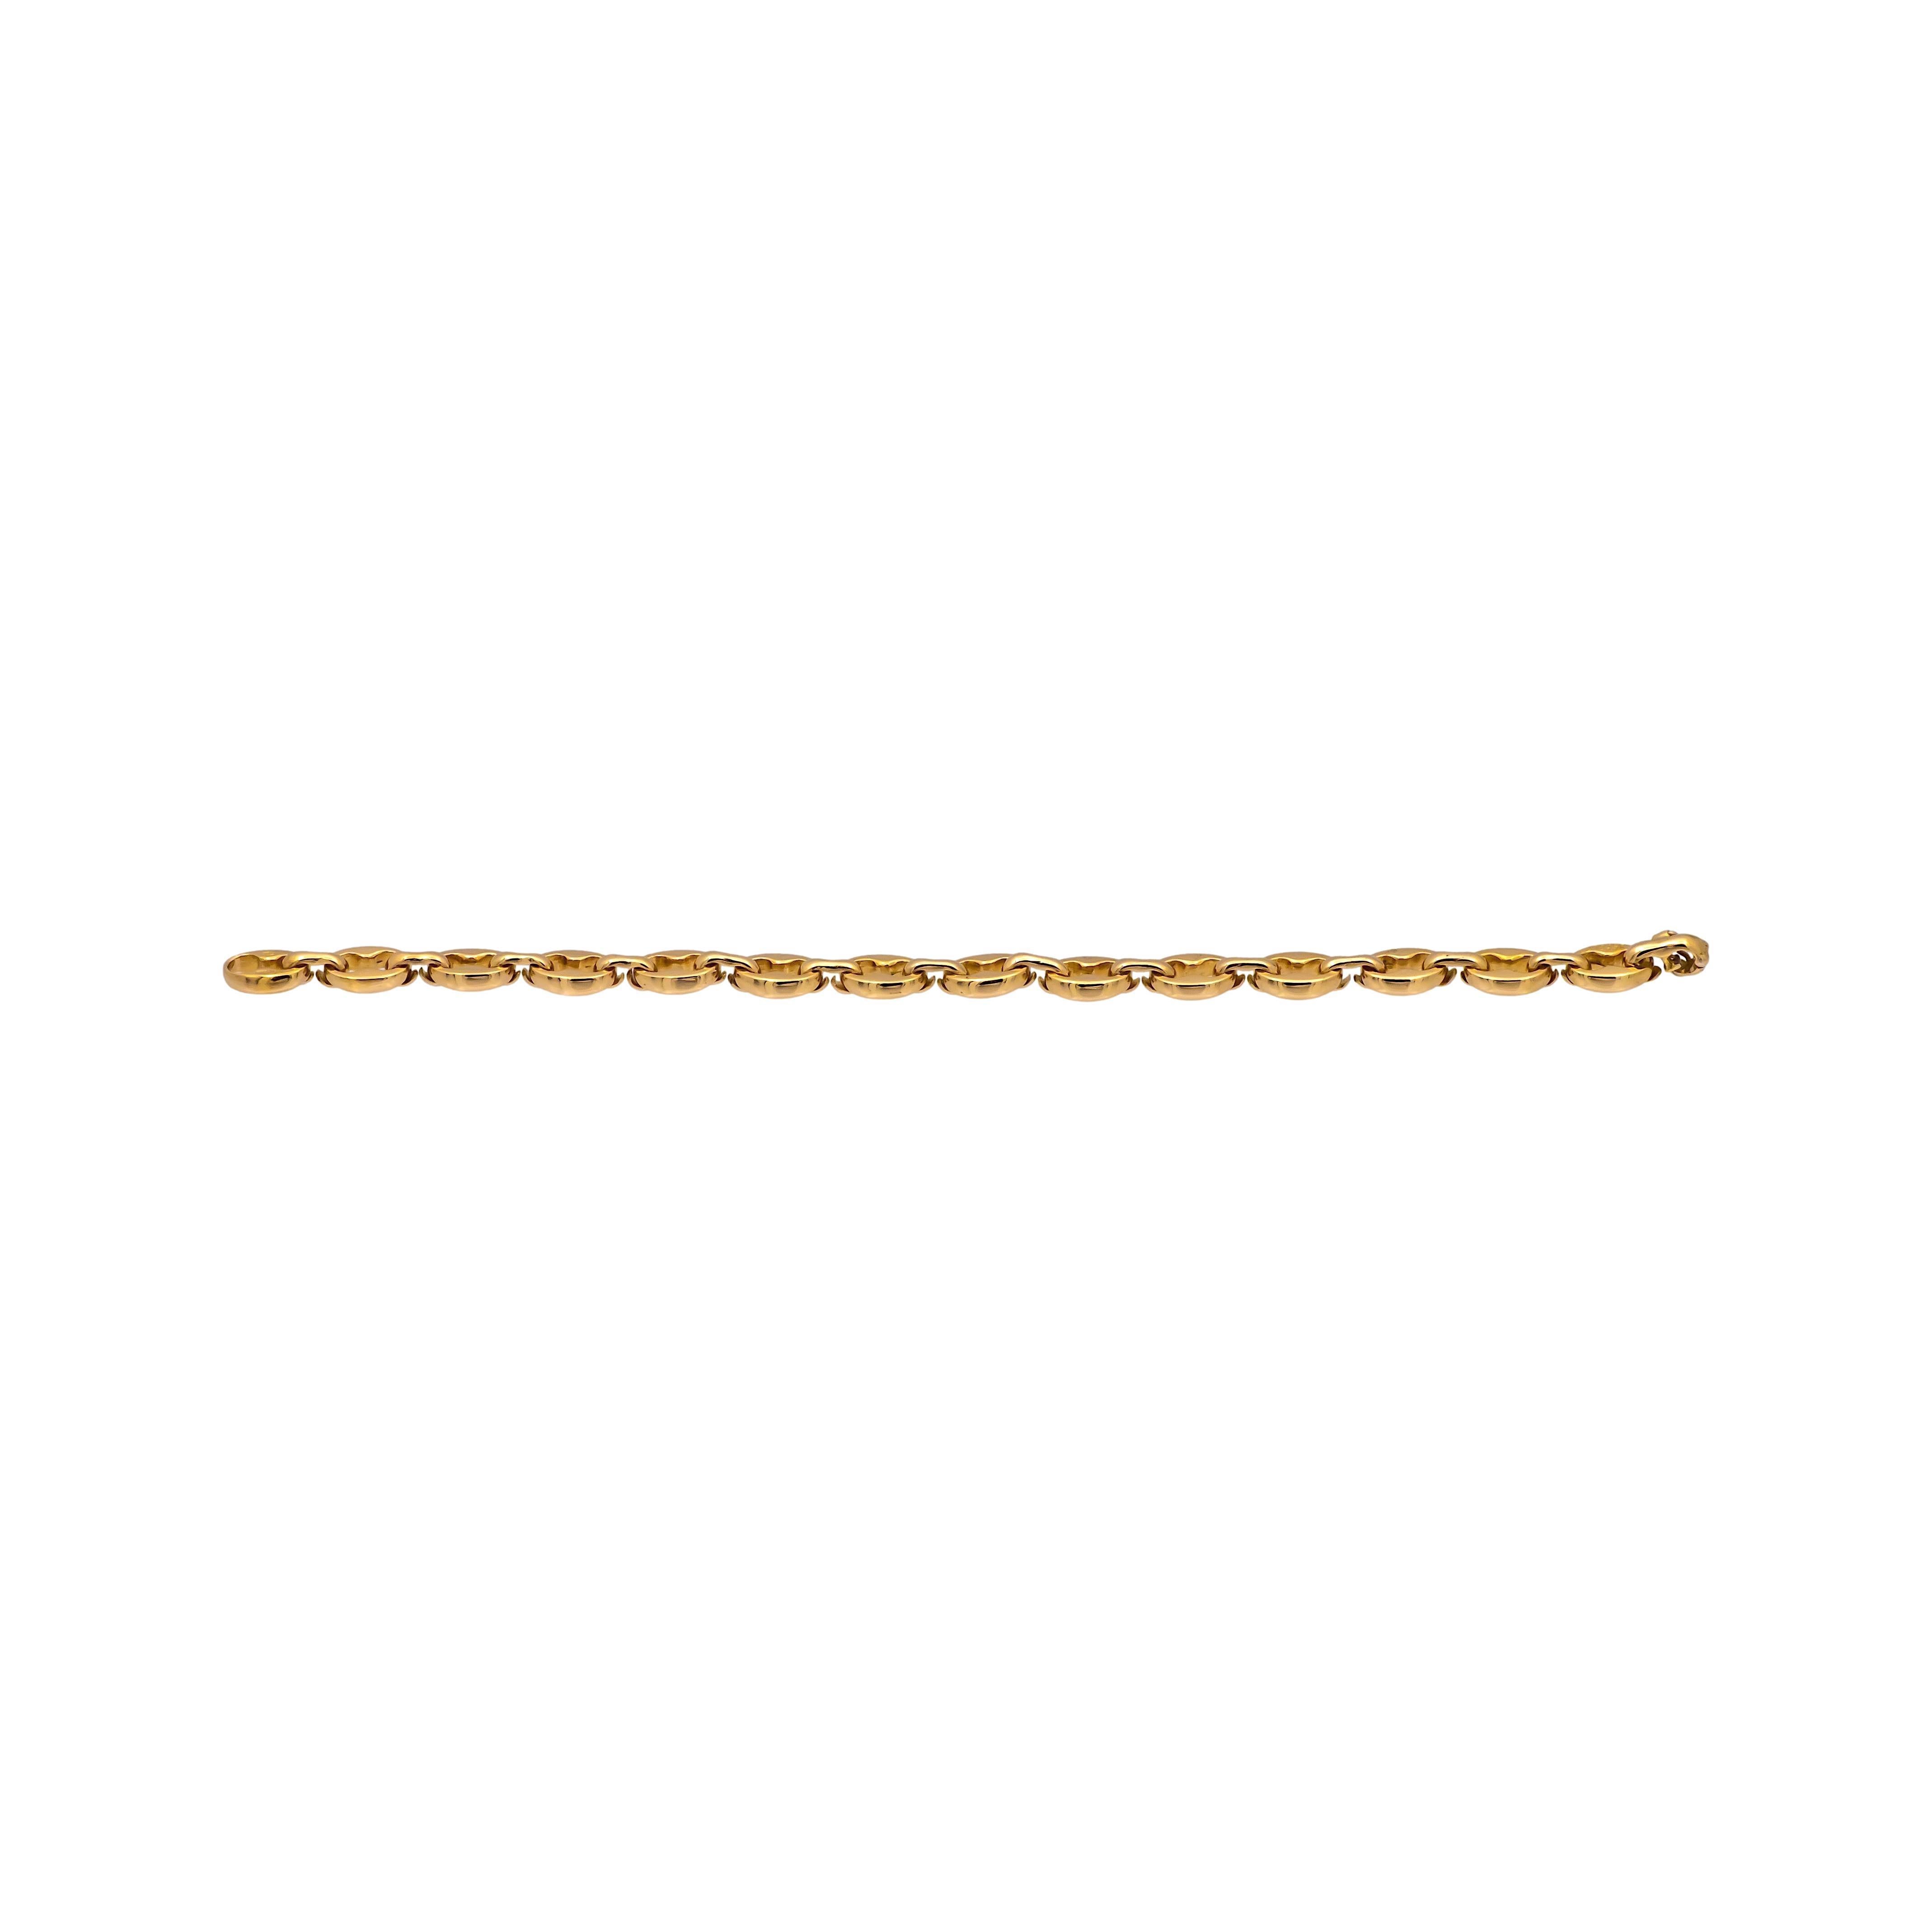 Bracelet Vintage Cartier finement réalisé en or jaune 18 carats avec des griffes ouvertes entrecroisées et un lien en forme de haricot. Le bracelet mesure 7